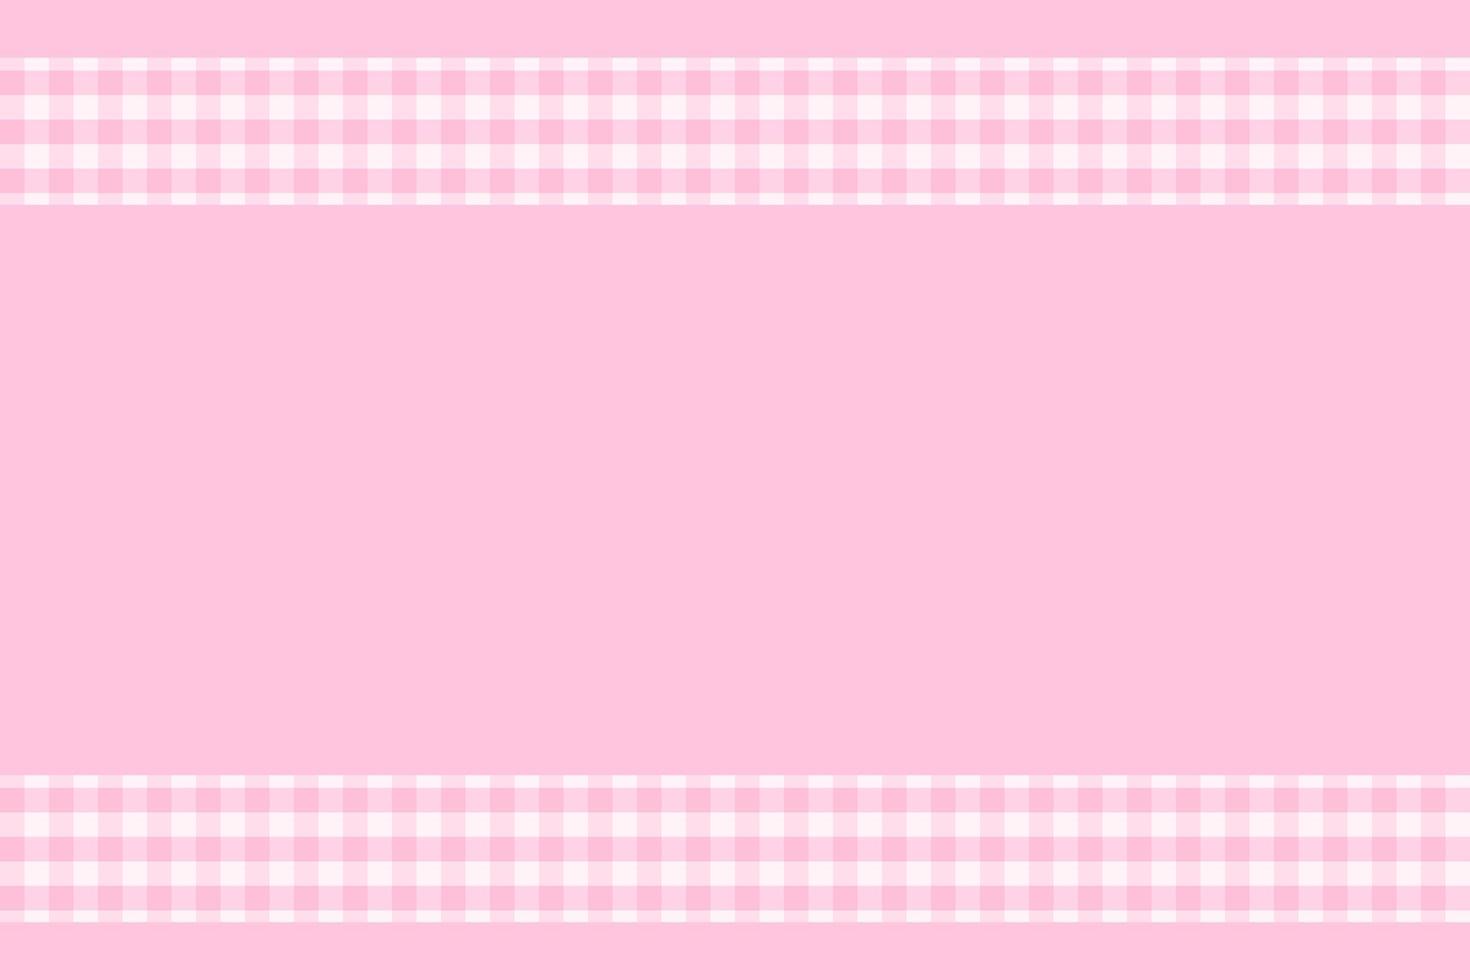 abstrakt bakgrundsvektor med pastellfärger kombination av mjuk rosa för kvinnor dag och påsk händelse vektor